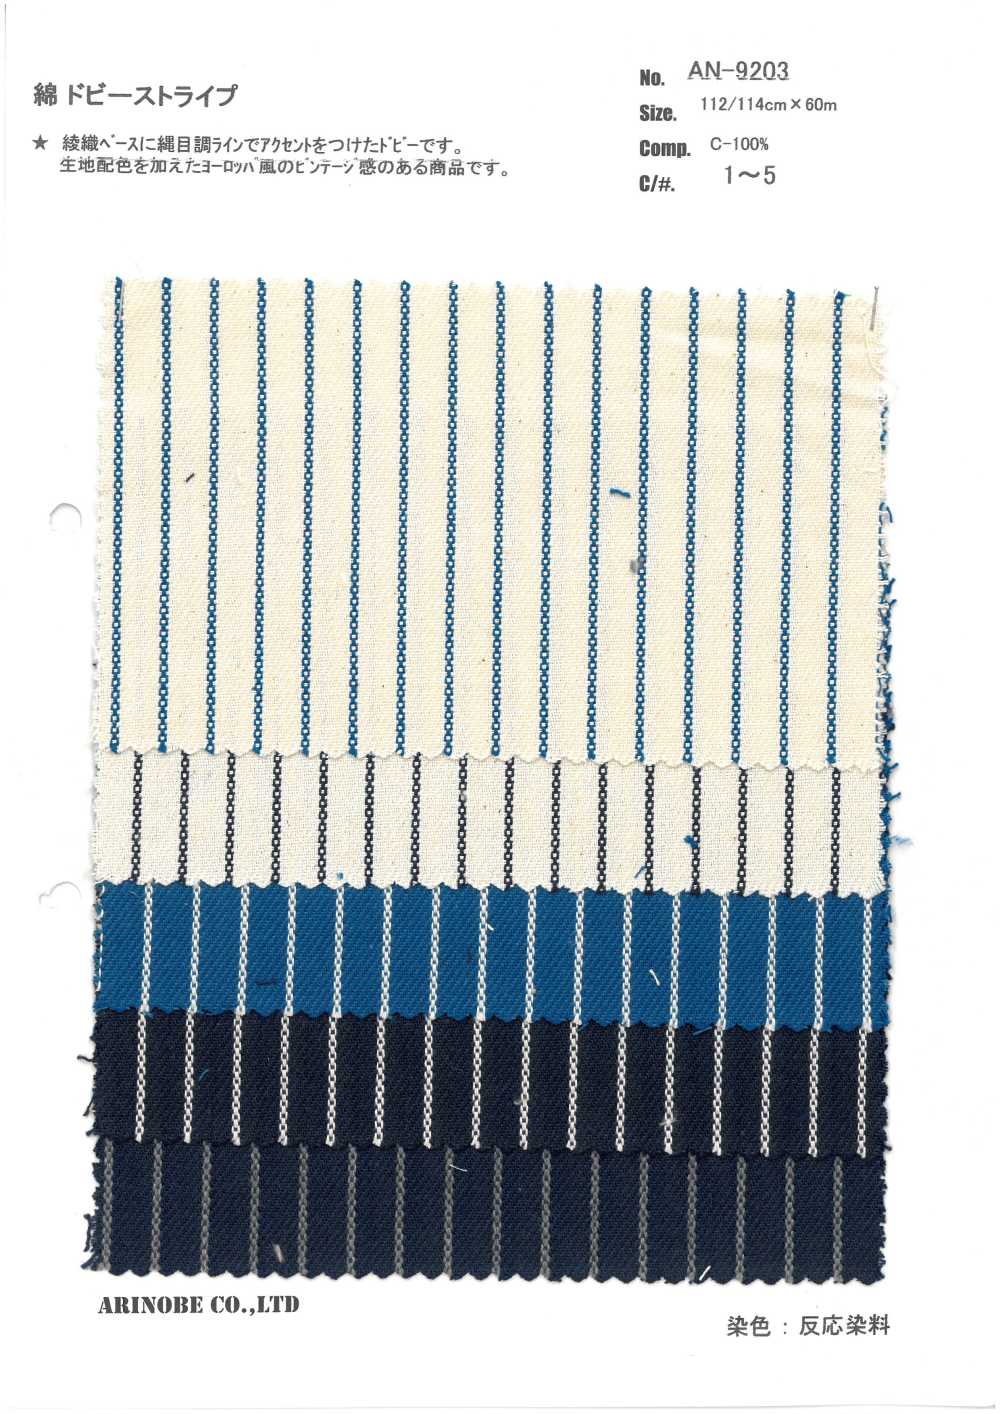 AN-9203 Listras Dobby De Algodão[Têxtil / Tecido] ARINOBE CO., LTD.